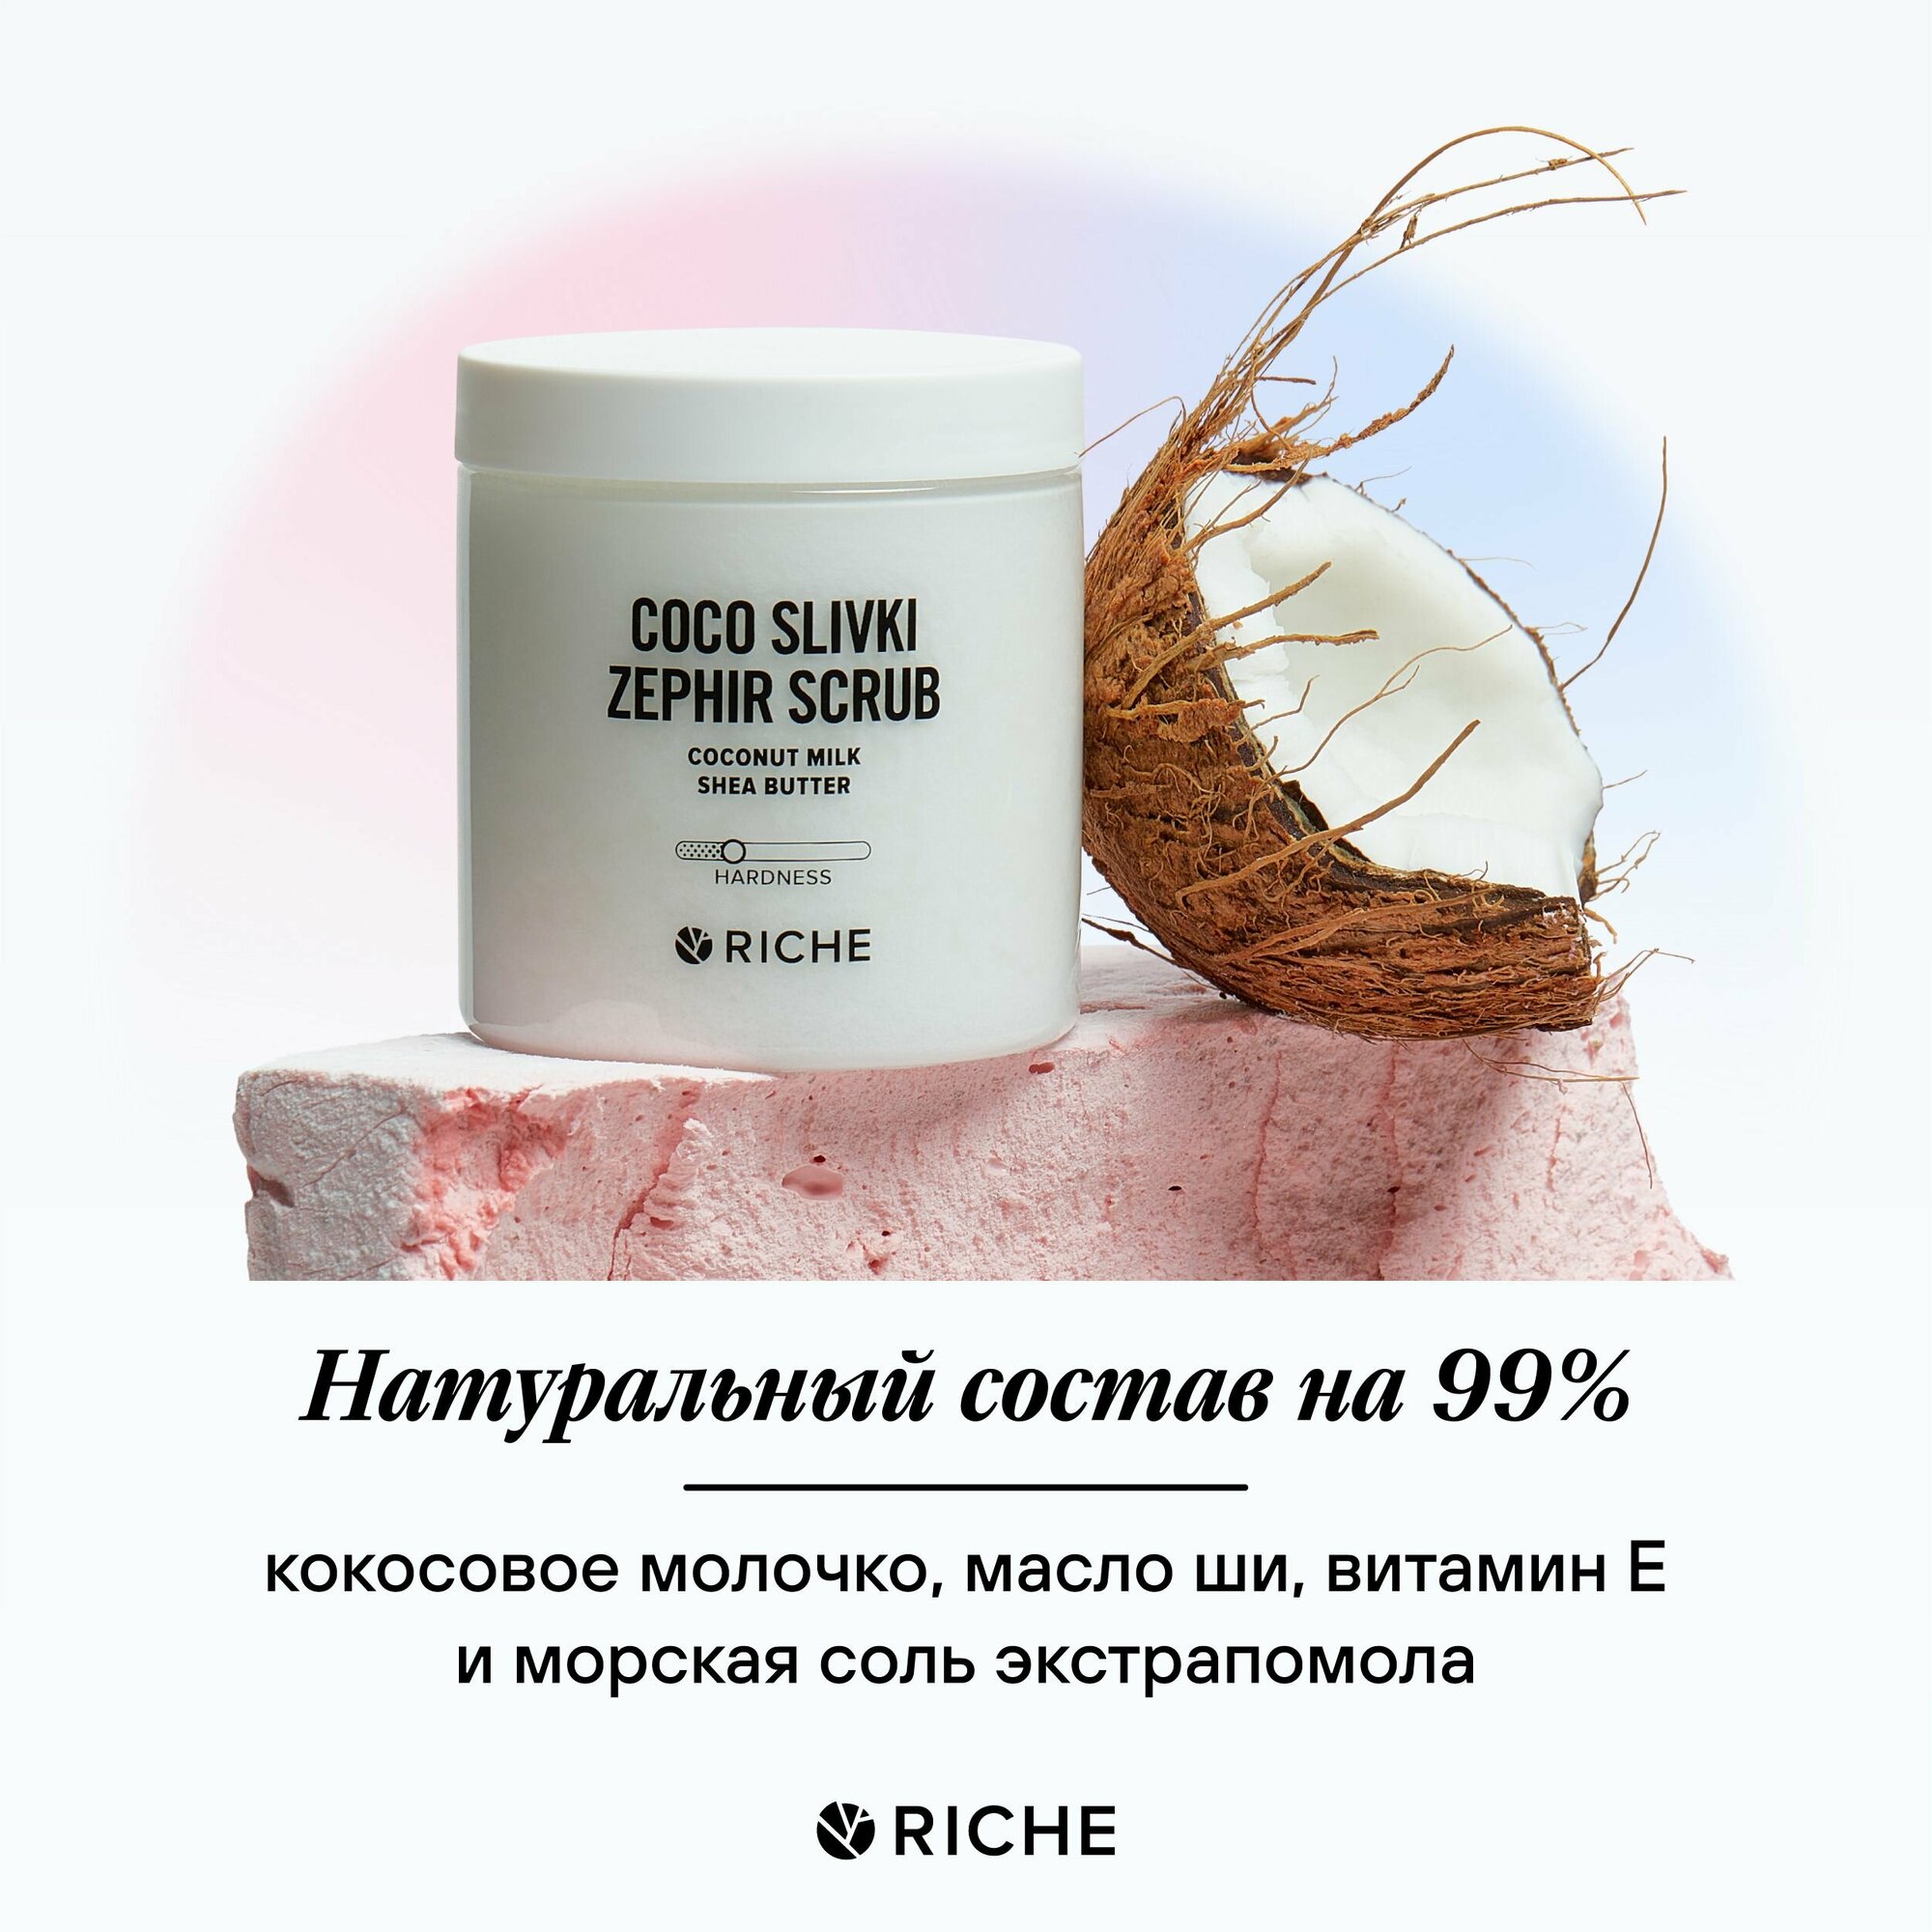 Сливочно - кокосовый антицеллюлитный соляной скраб для тела с маслом ши RICHE